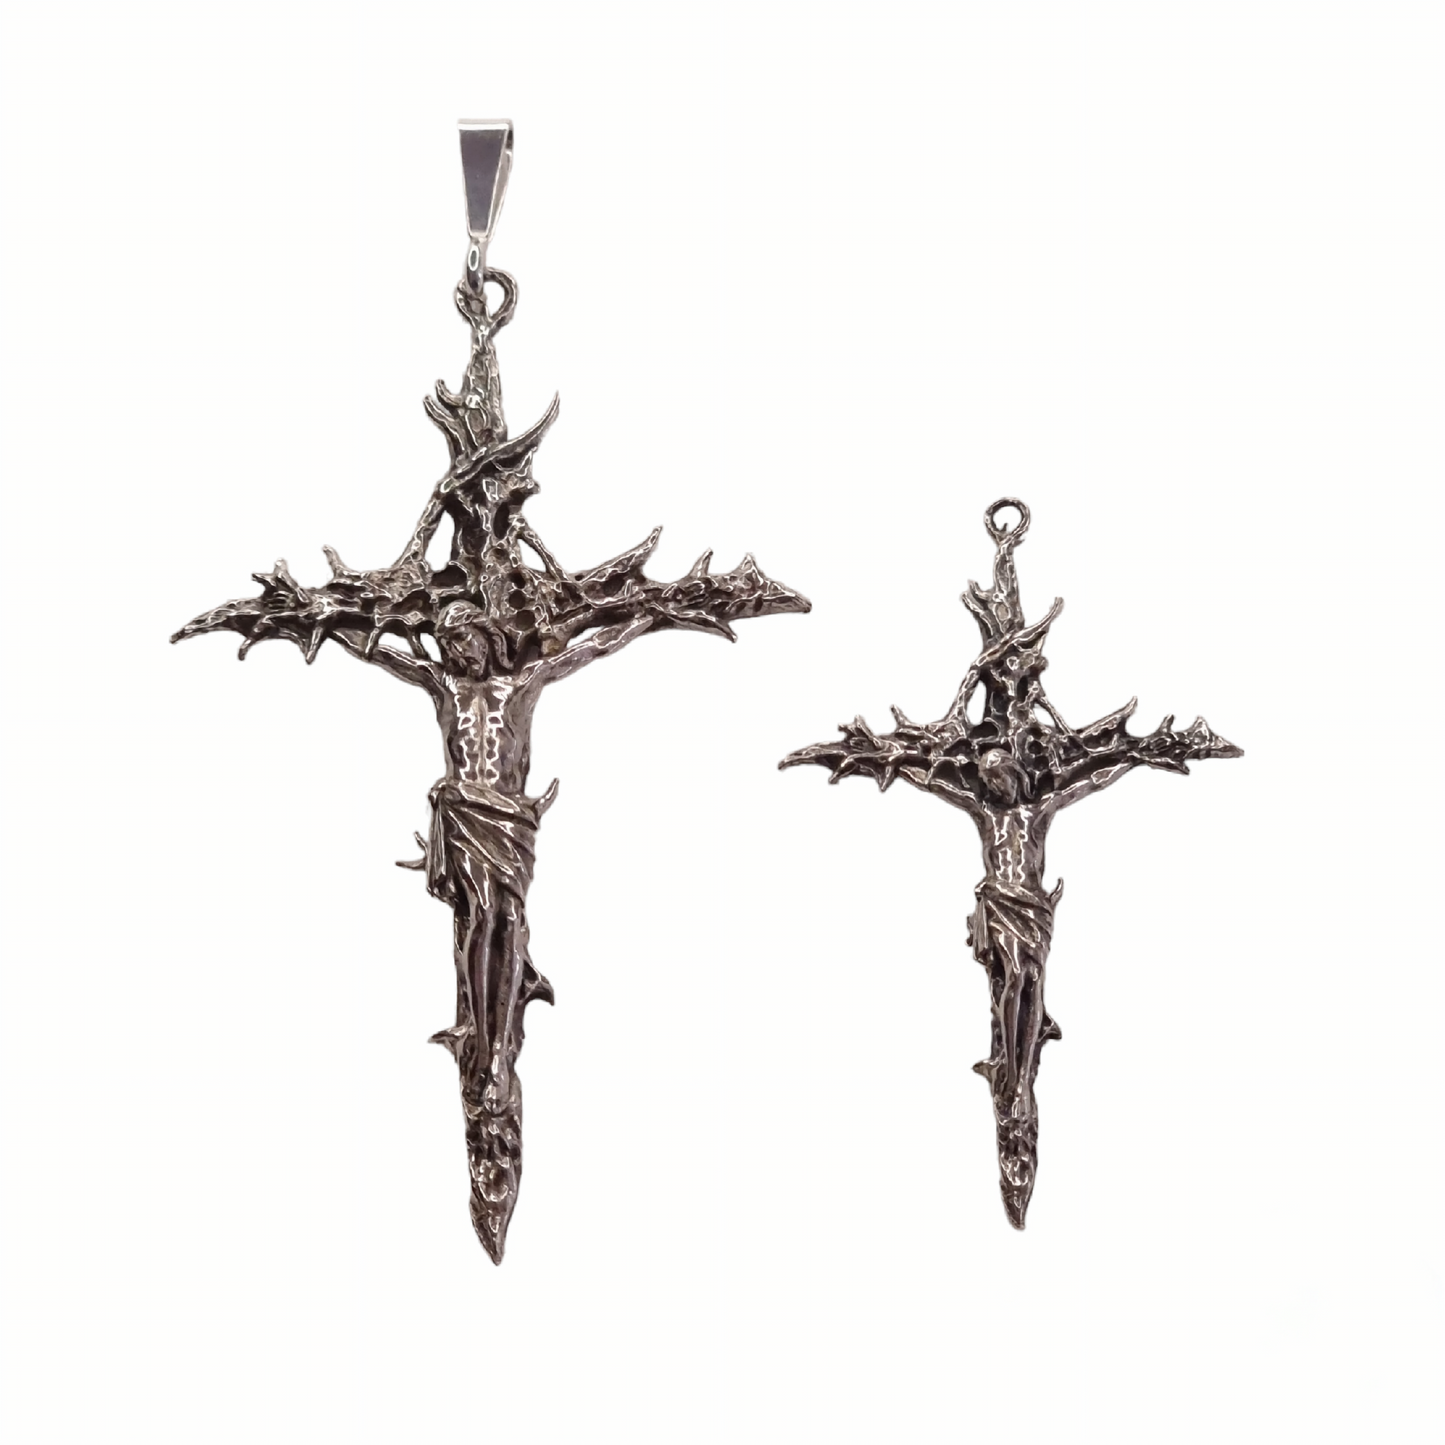 The Forsaken Crucifix Pendant